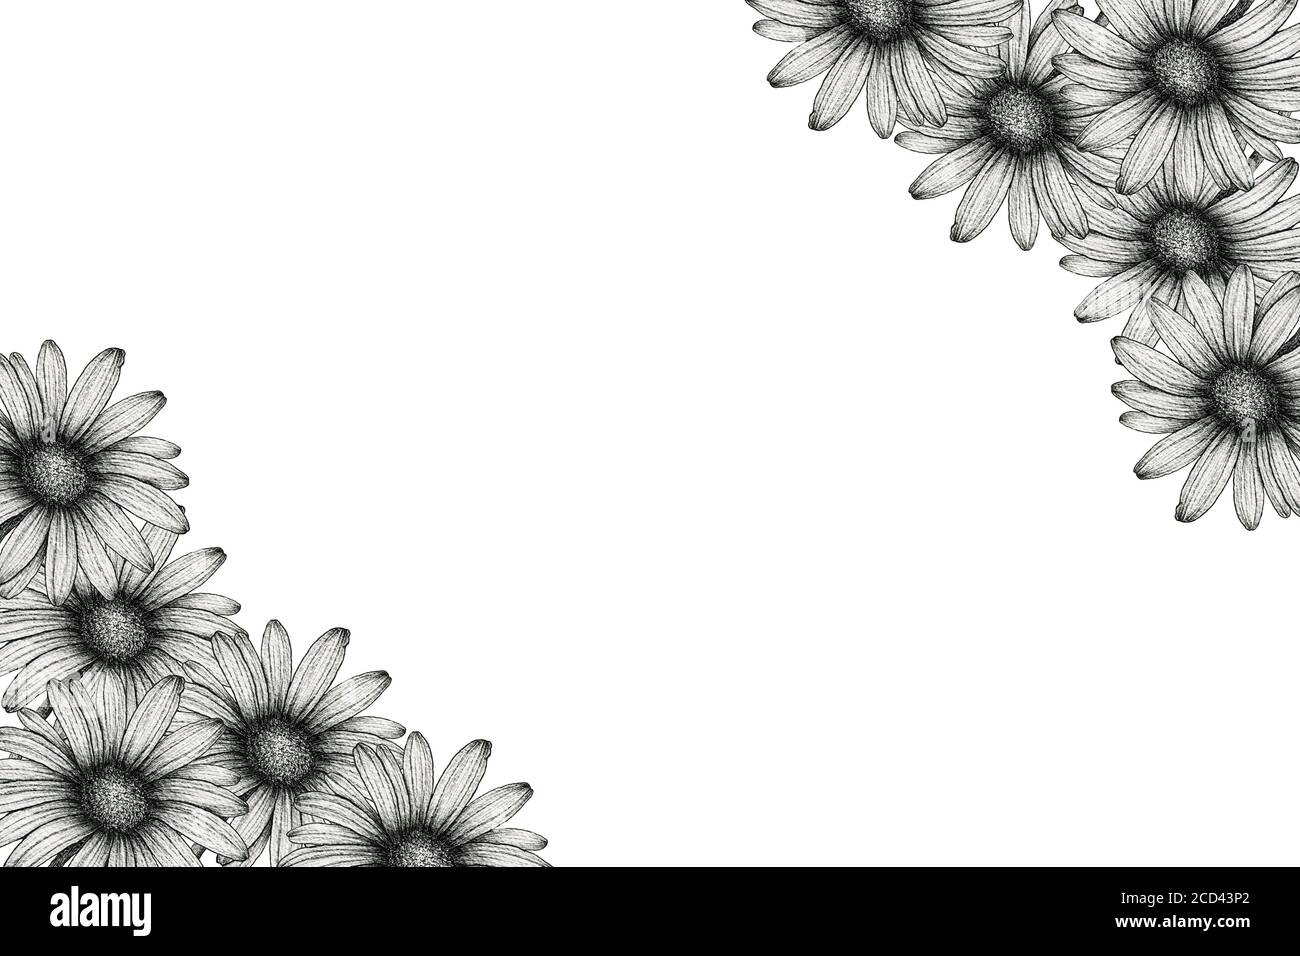 Khung hoa cổ điển với hoa cúc đen trắng là sự kết hợp tuyệt vời của vẻ đẹp cổ điển và sự hiện đại. Những đường nét uyển chuyển, màu sắc tinh tế sẽ khiến cho bức tranh trở nên thật nổi bật và quyến rũ.